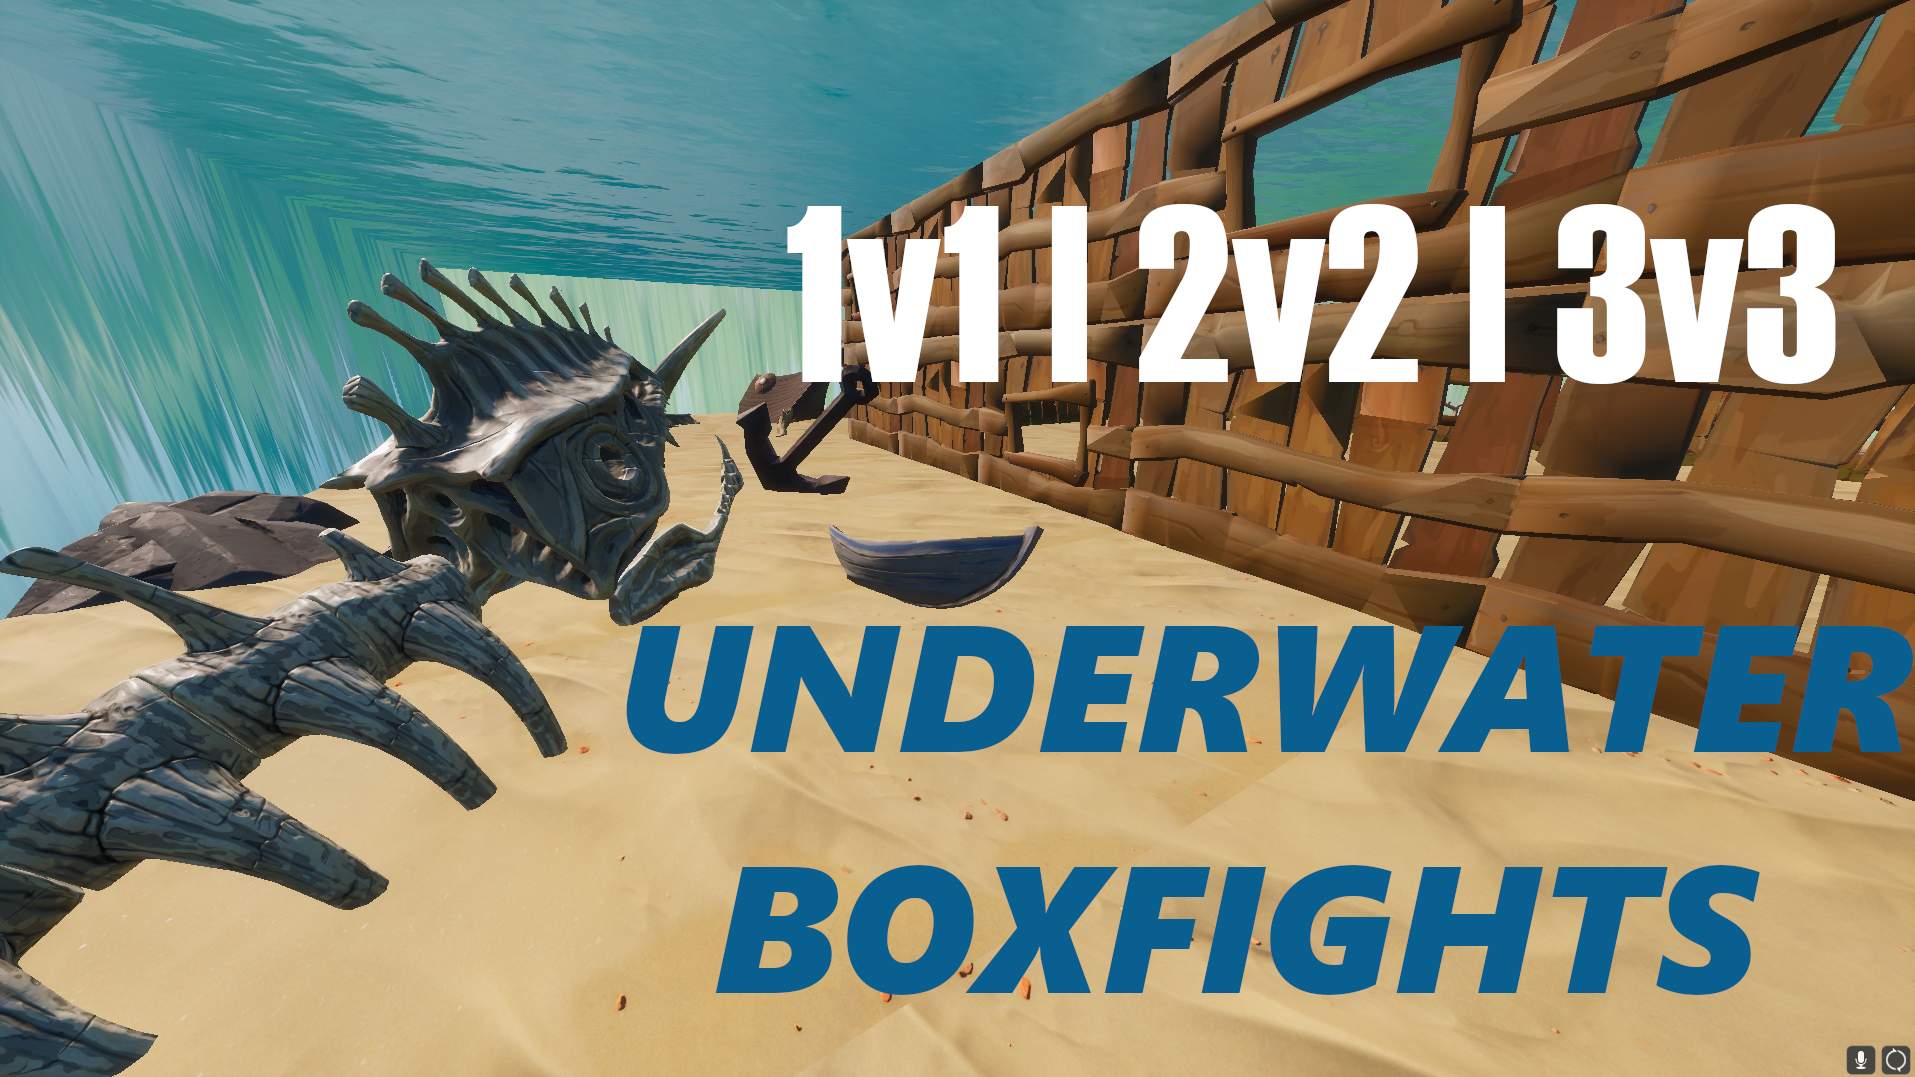 UNDERWATER BOXFIGHTS 1V1 | 2V2 | 3V3